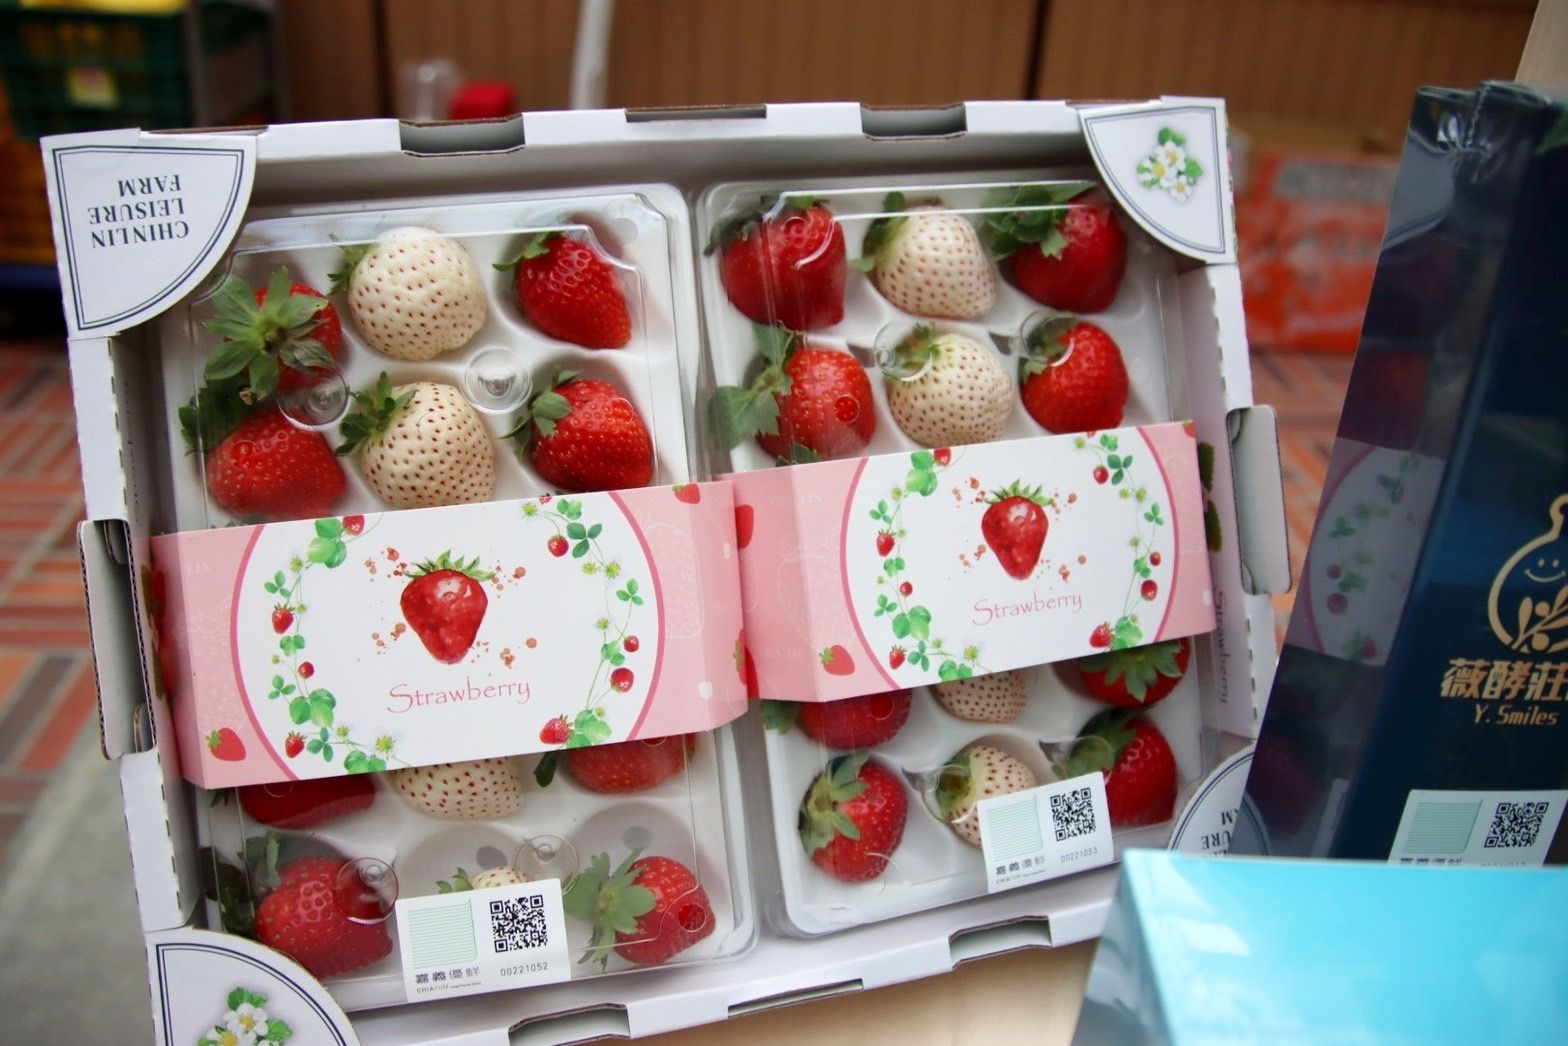 草莓為極容易損傷的水果，富含維他命C，所以有著水果皇后的稱呼，建議於購買後2天內食用完畢，才能品嘗到草莓絕佳的風味喔!